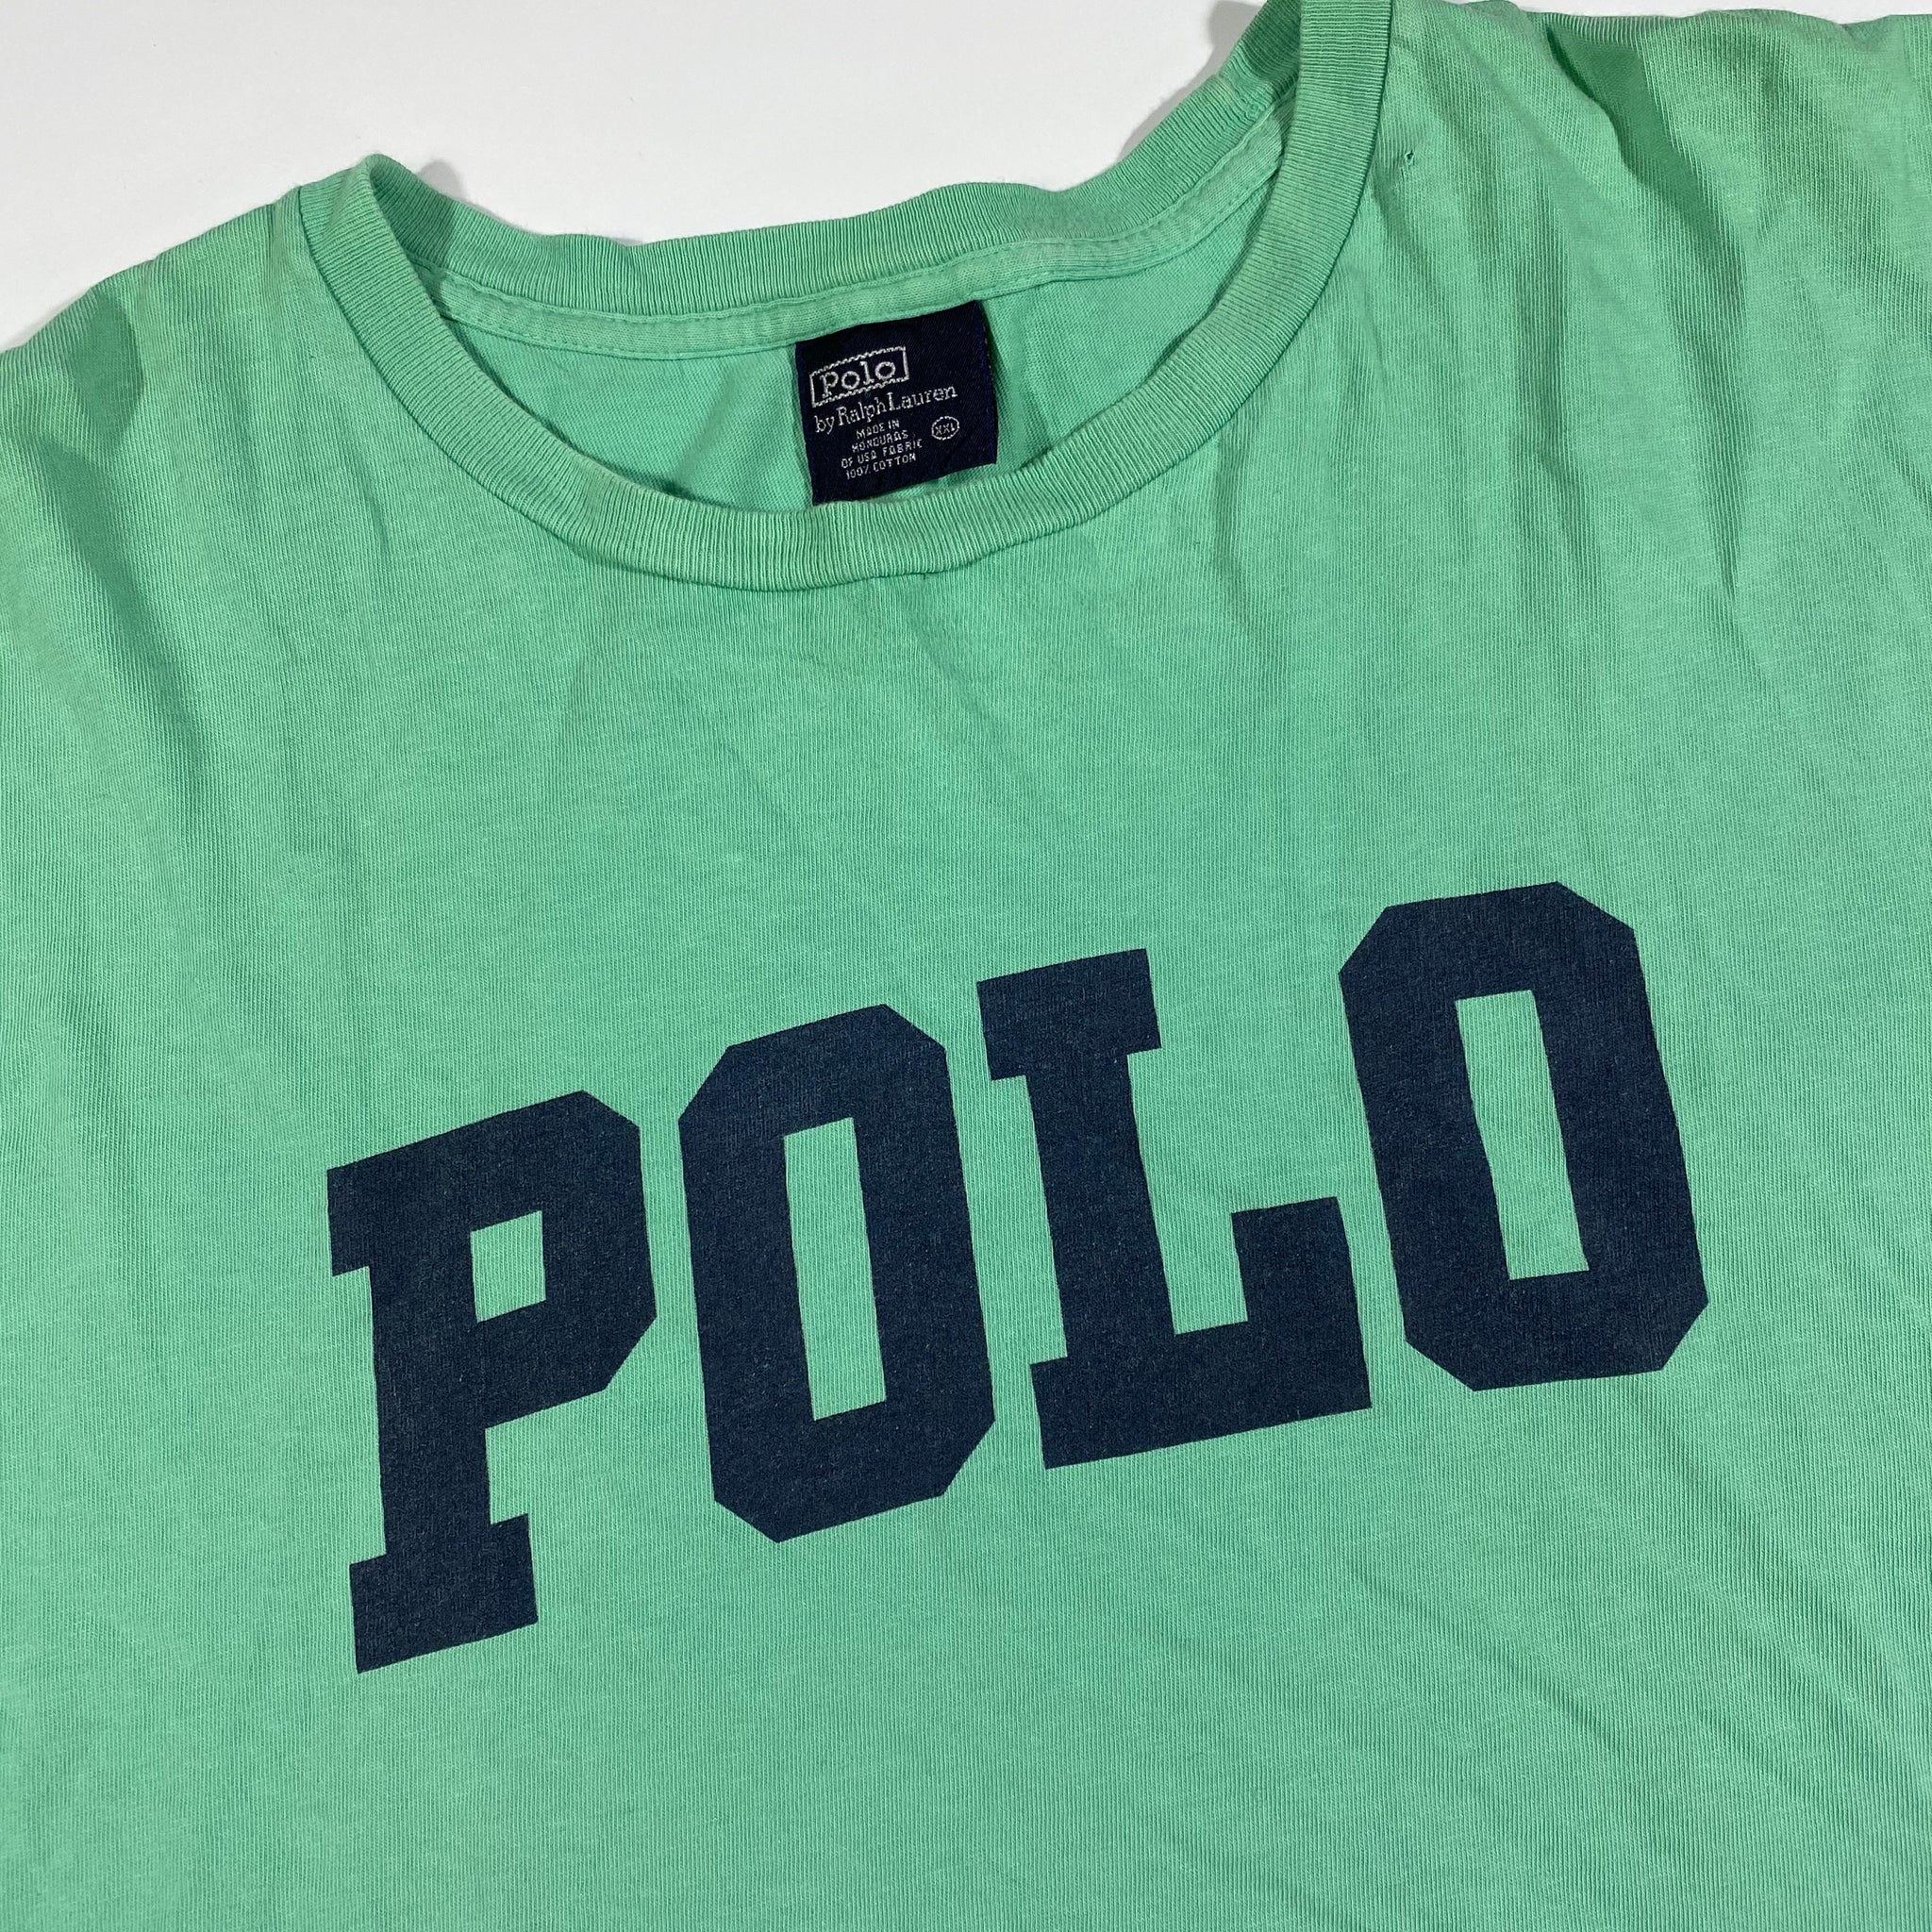 Polo ralph lauren shirt. XXL